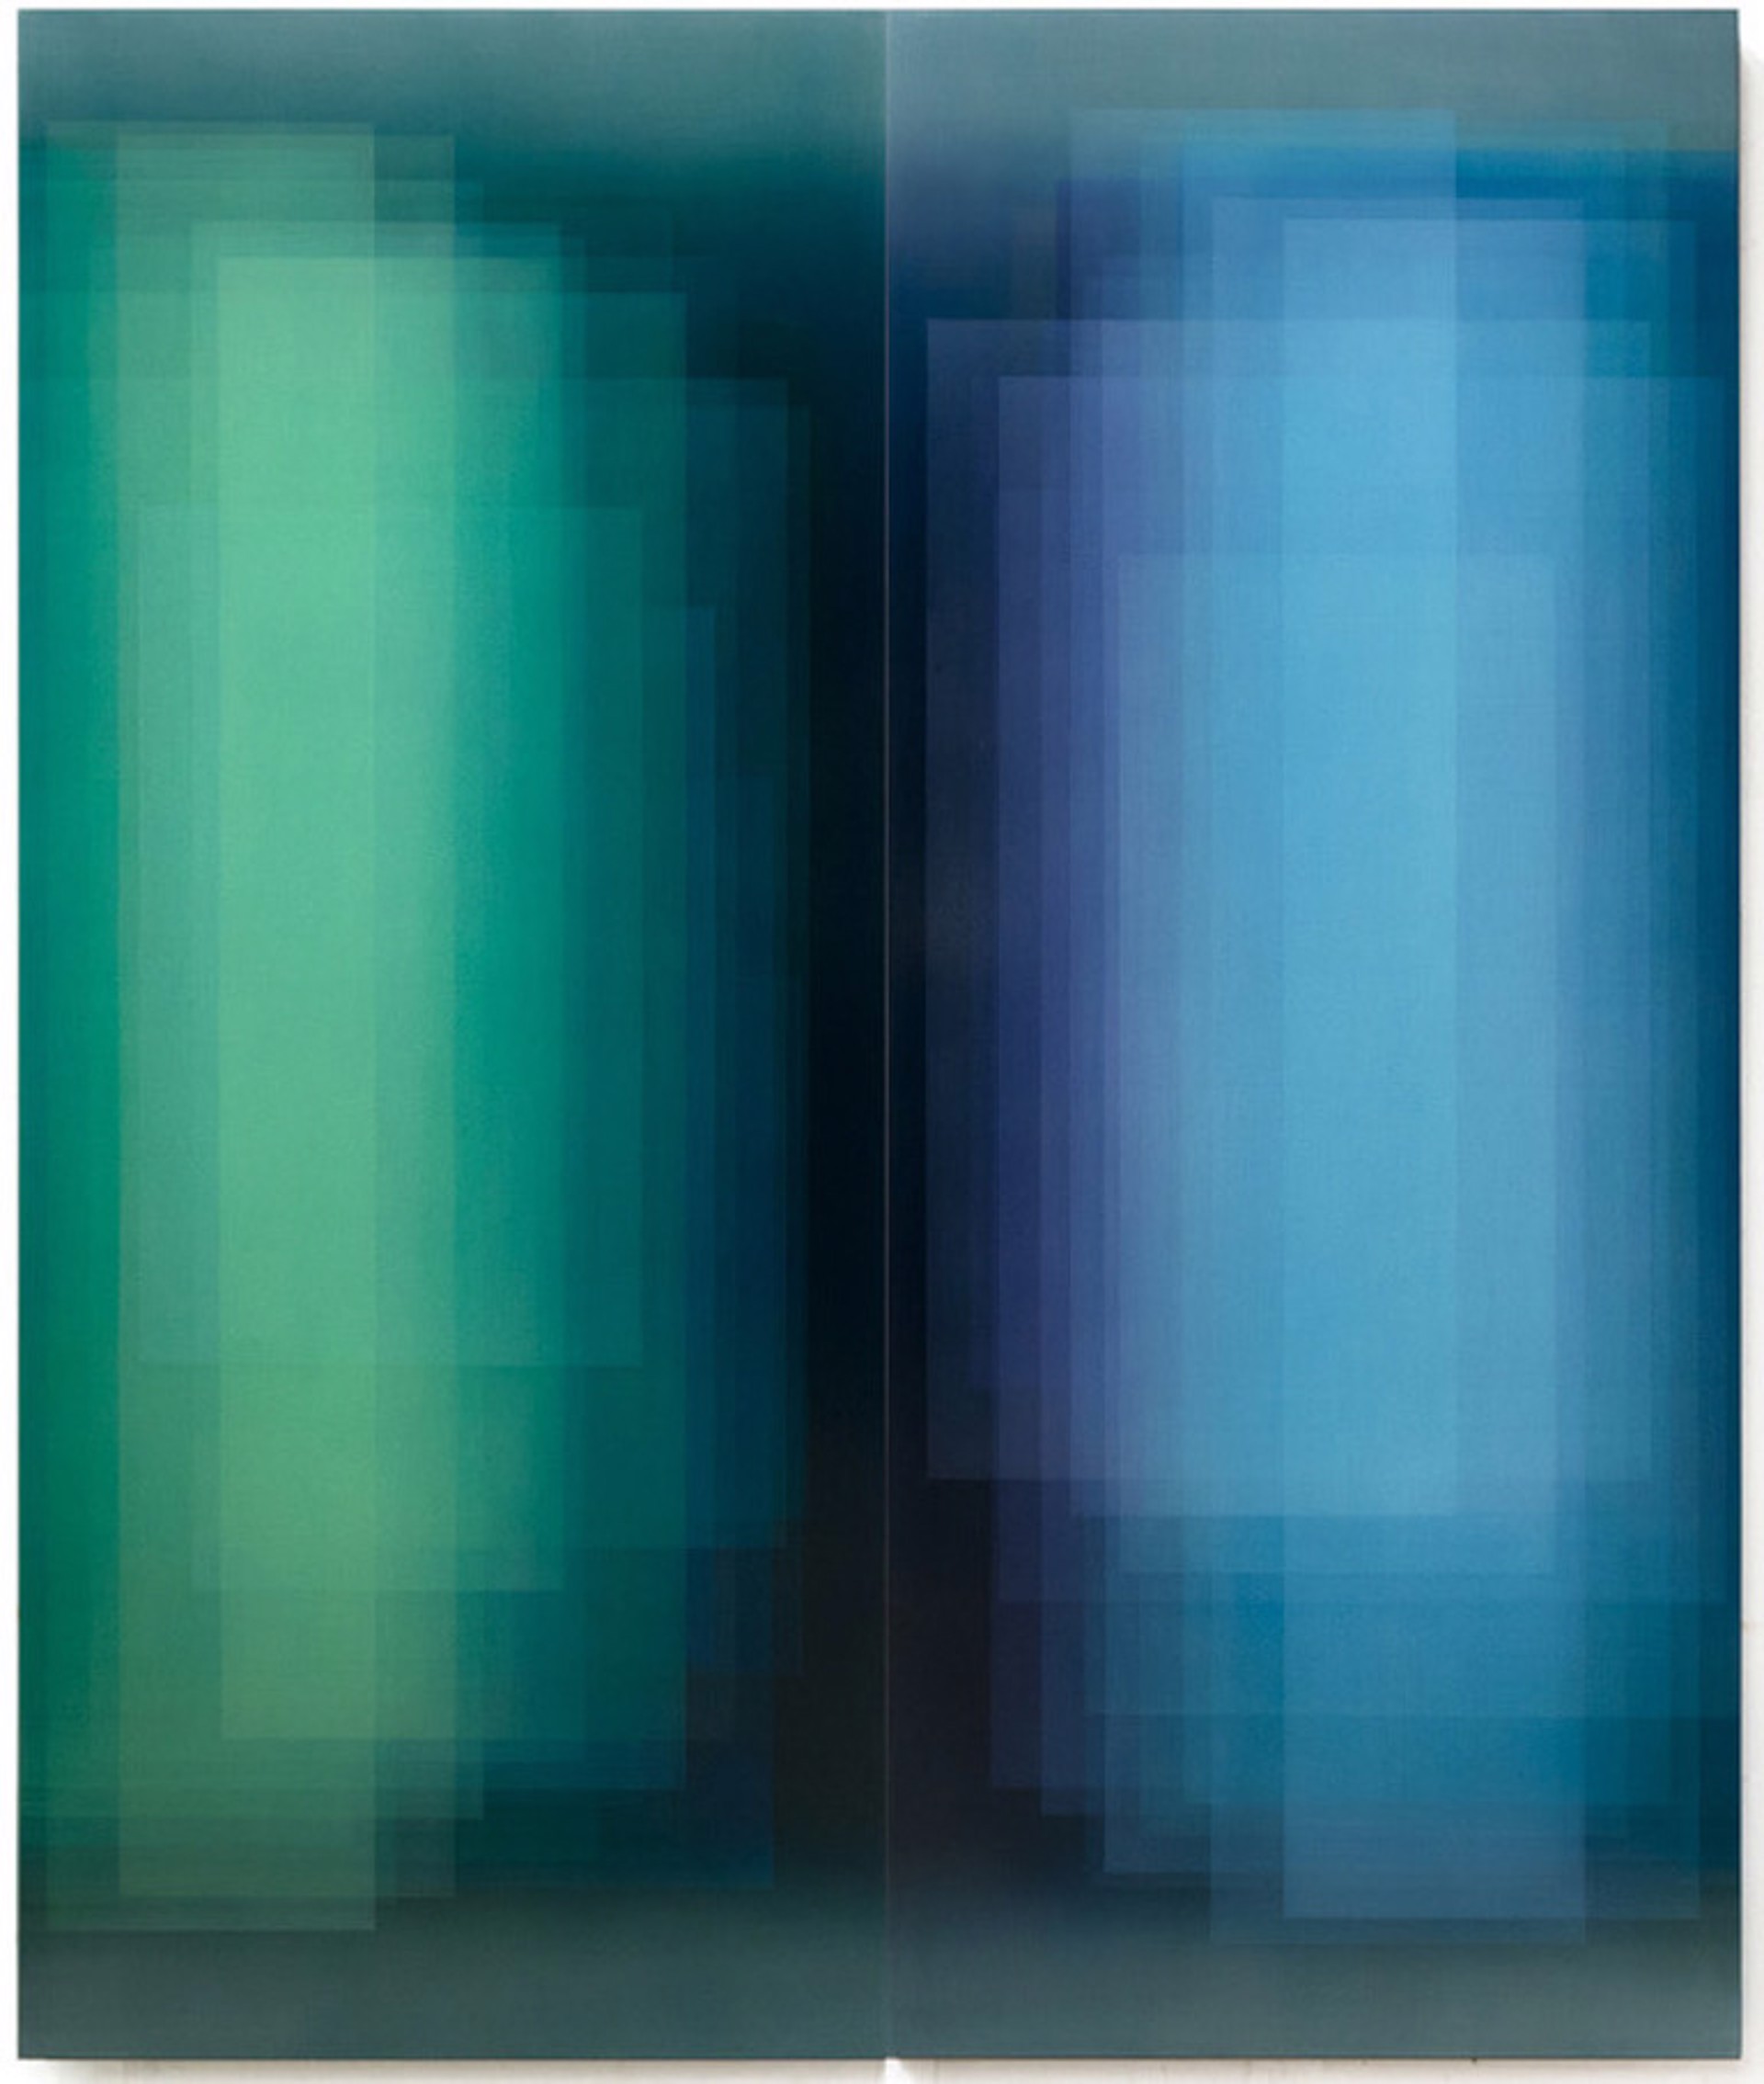 Duality (Green & Blue Diptych) by Bernadette Jiyong Frank